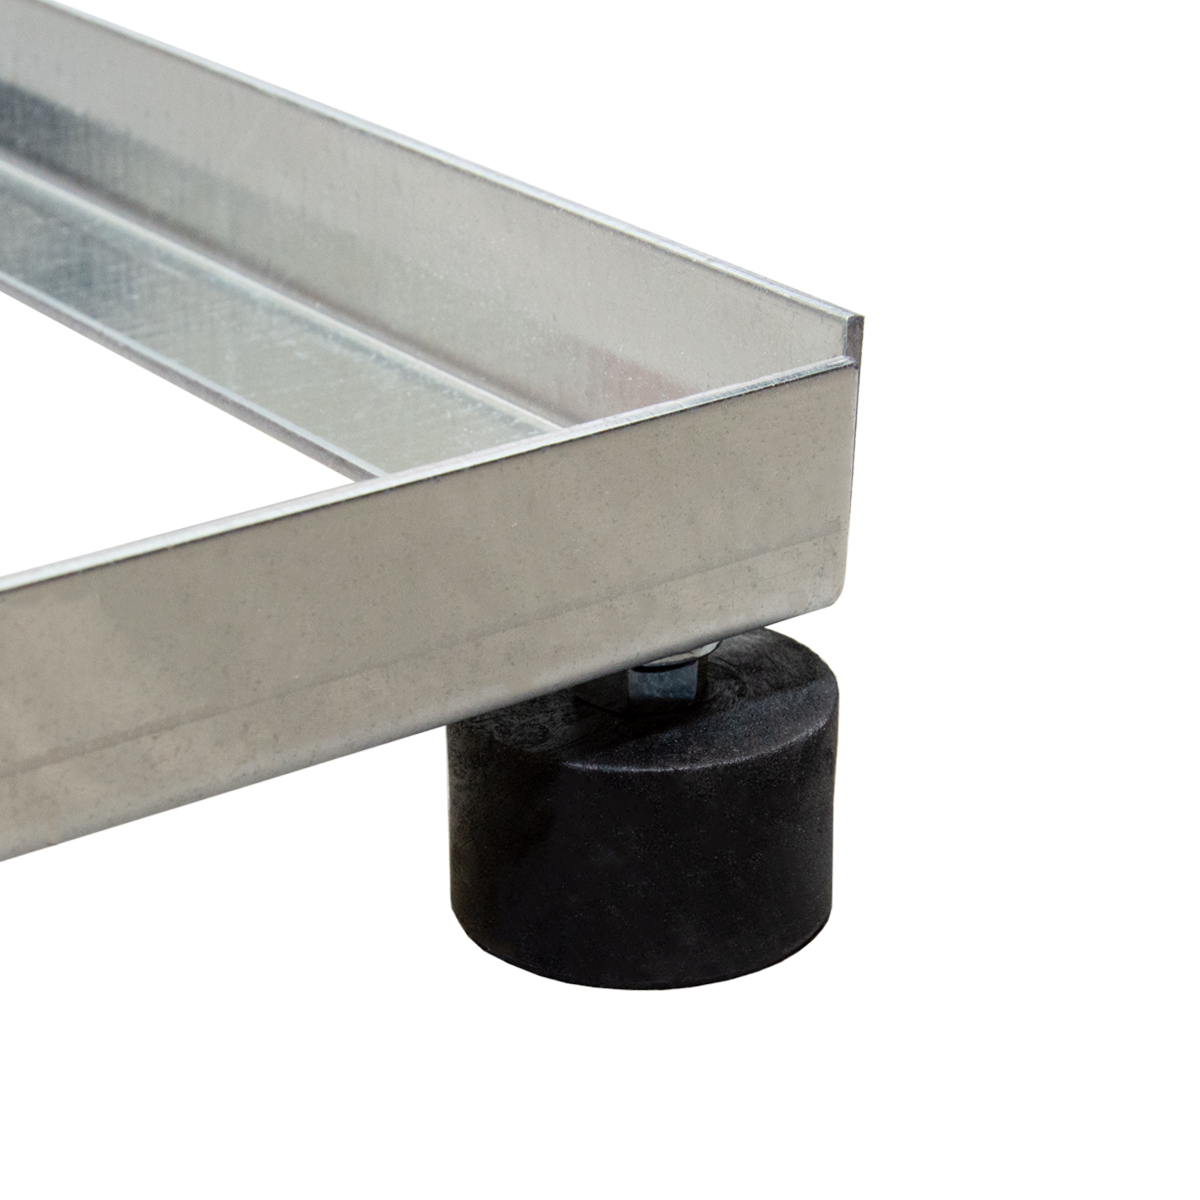 PREMIUMX / Silber SAT Flachdachständer 4x / Mast 30x30cm Stahl Balkonständer Balkonständer Terrassenständer, Flachdachständer